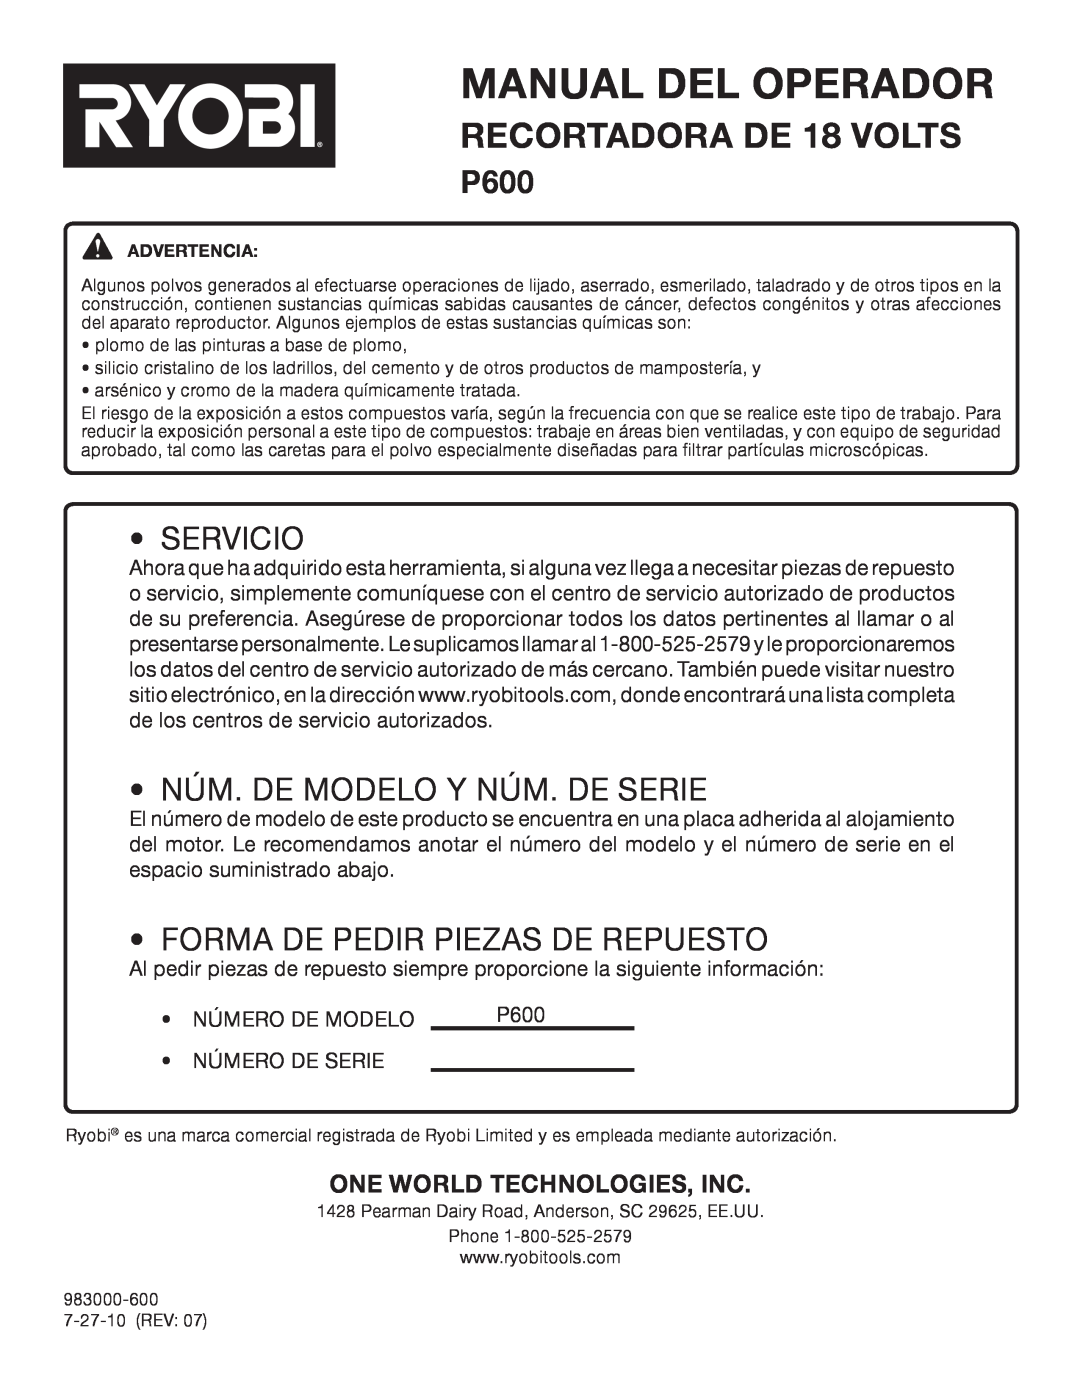 Ryobi P600 manual Servicio, Núm. De Modelo Y Núm. De Serie, Forma De Pedir Piezas De Repuesto, Manual Del Operador 